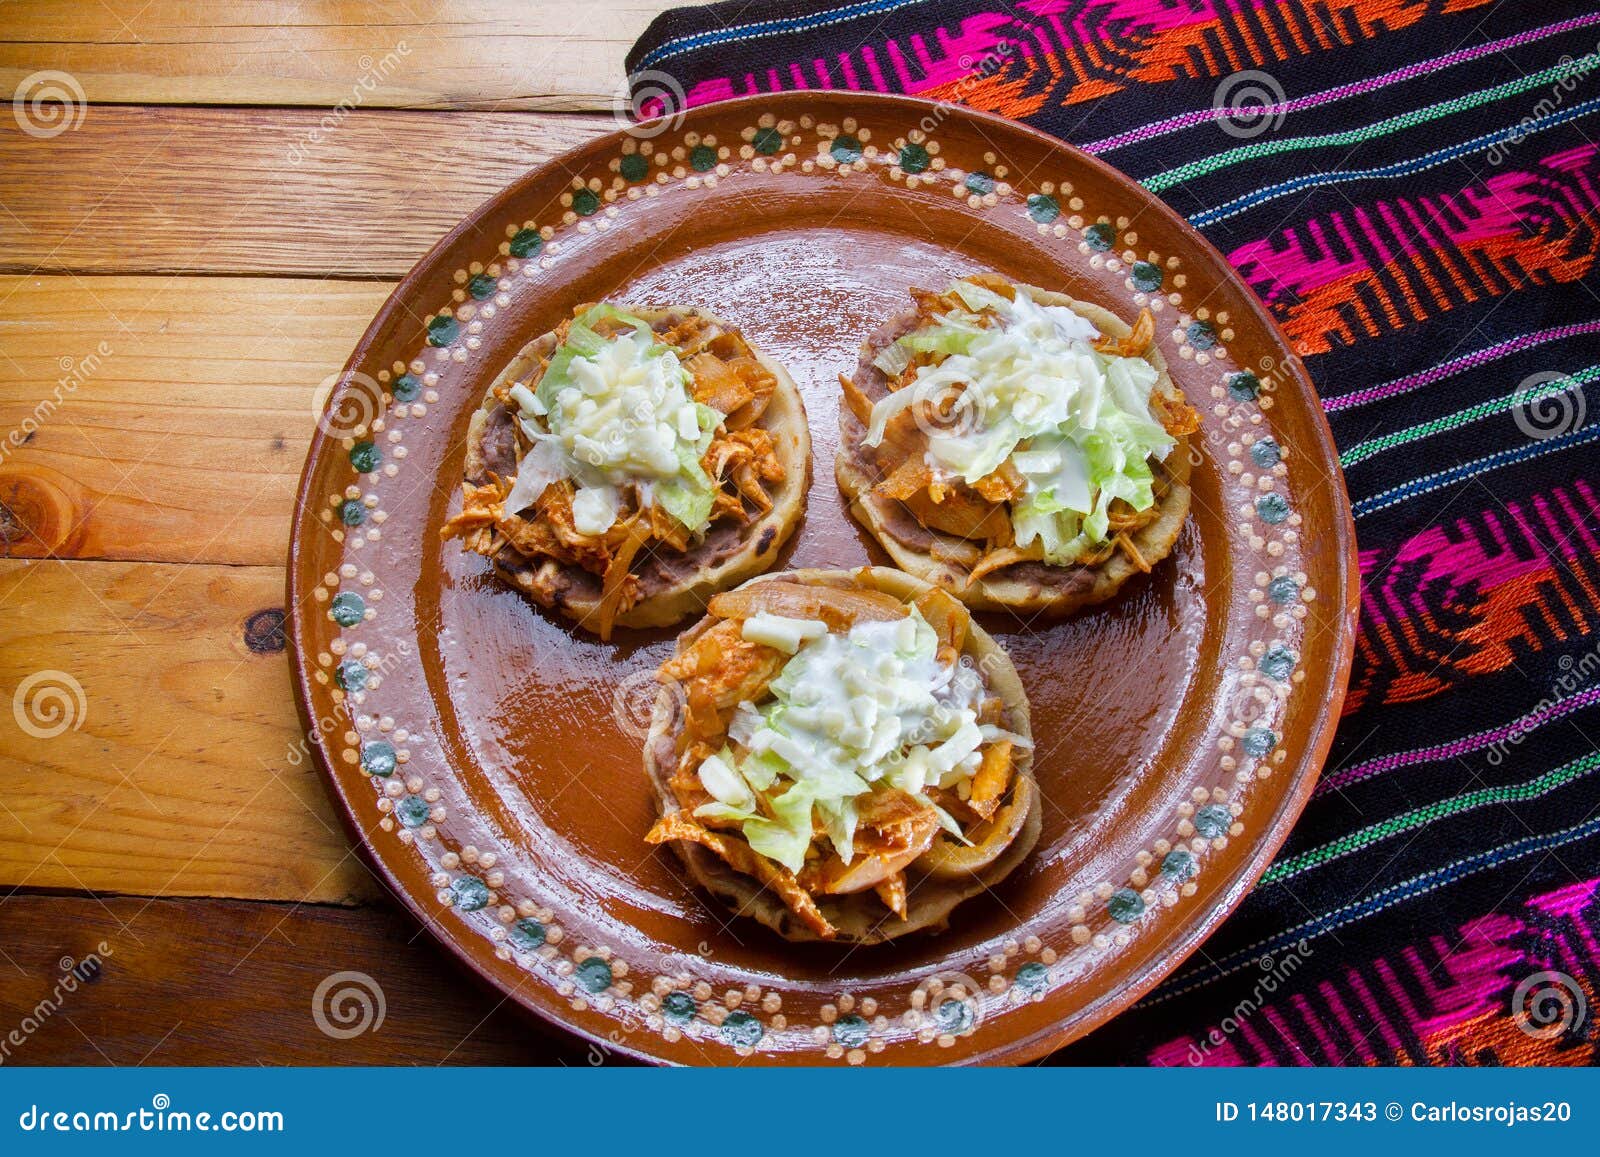 mexican food: tinga sopes